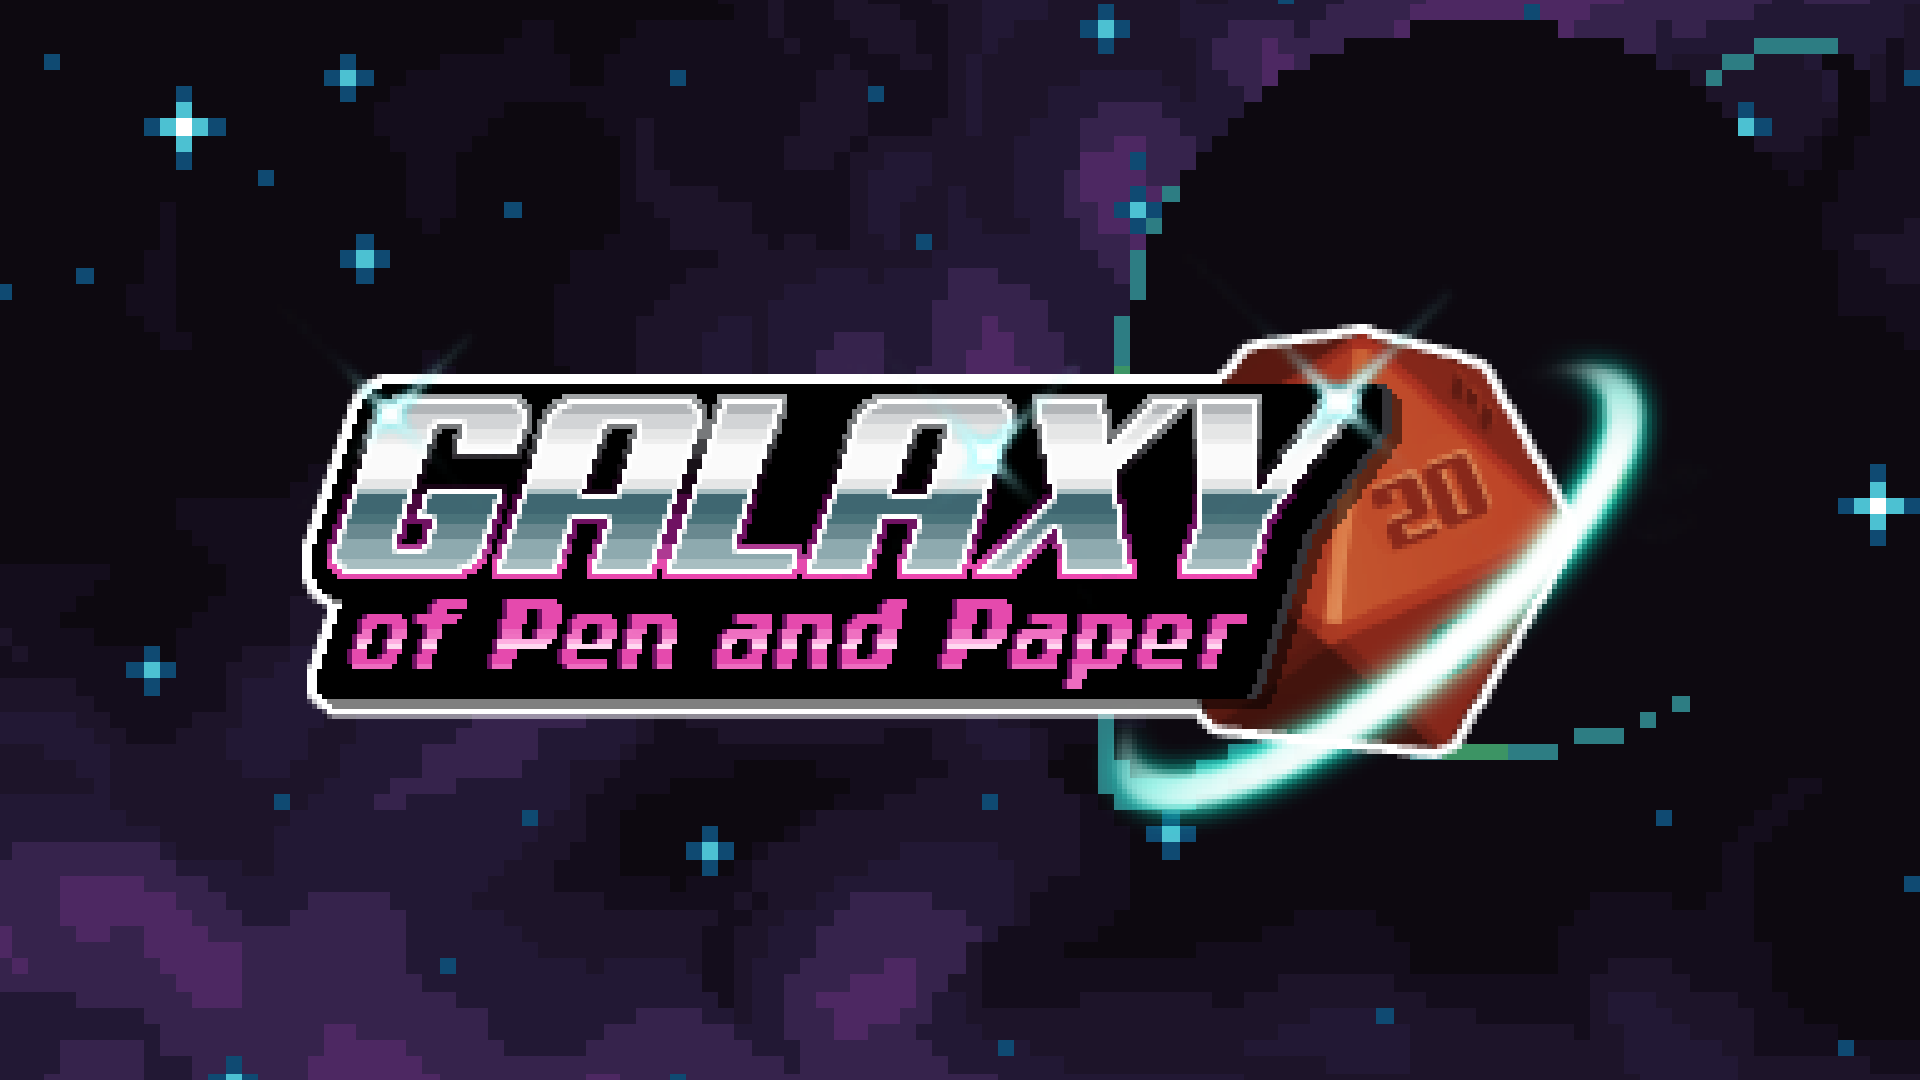 《纸笔骑士》开发商新作《纸笔银河》将于7月27日登陆PC与手游平台